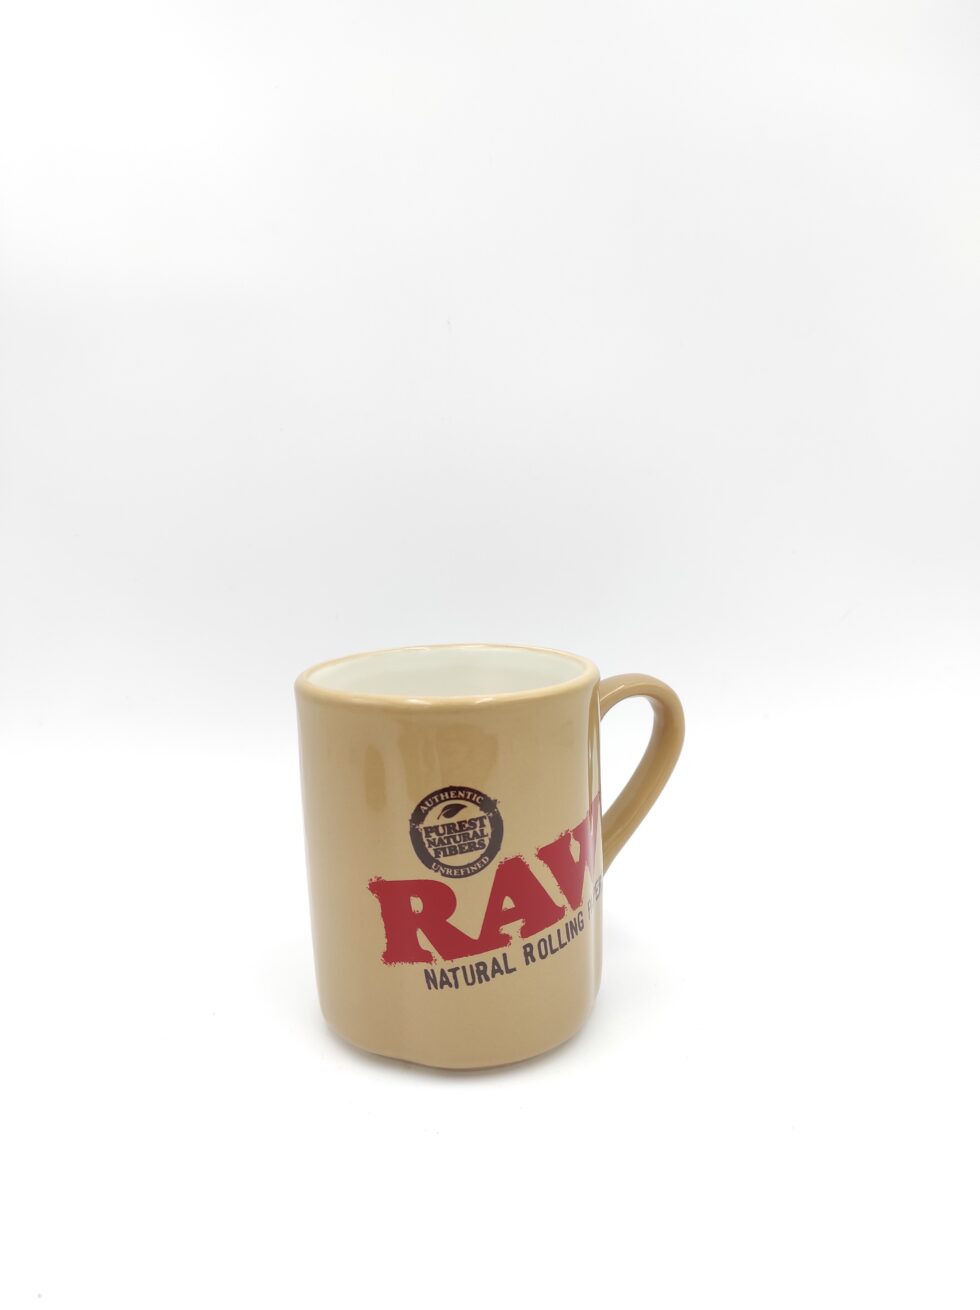 Aggiungi stile alla tua routine con RAW Ceramic Coffee Mug. Realizzata in ceramica di alta qualità, questa tazza è perfetta per il tuo caffè o tè preferito.